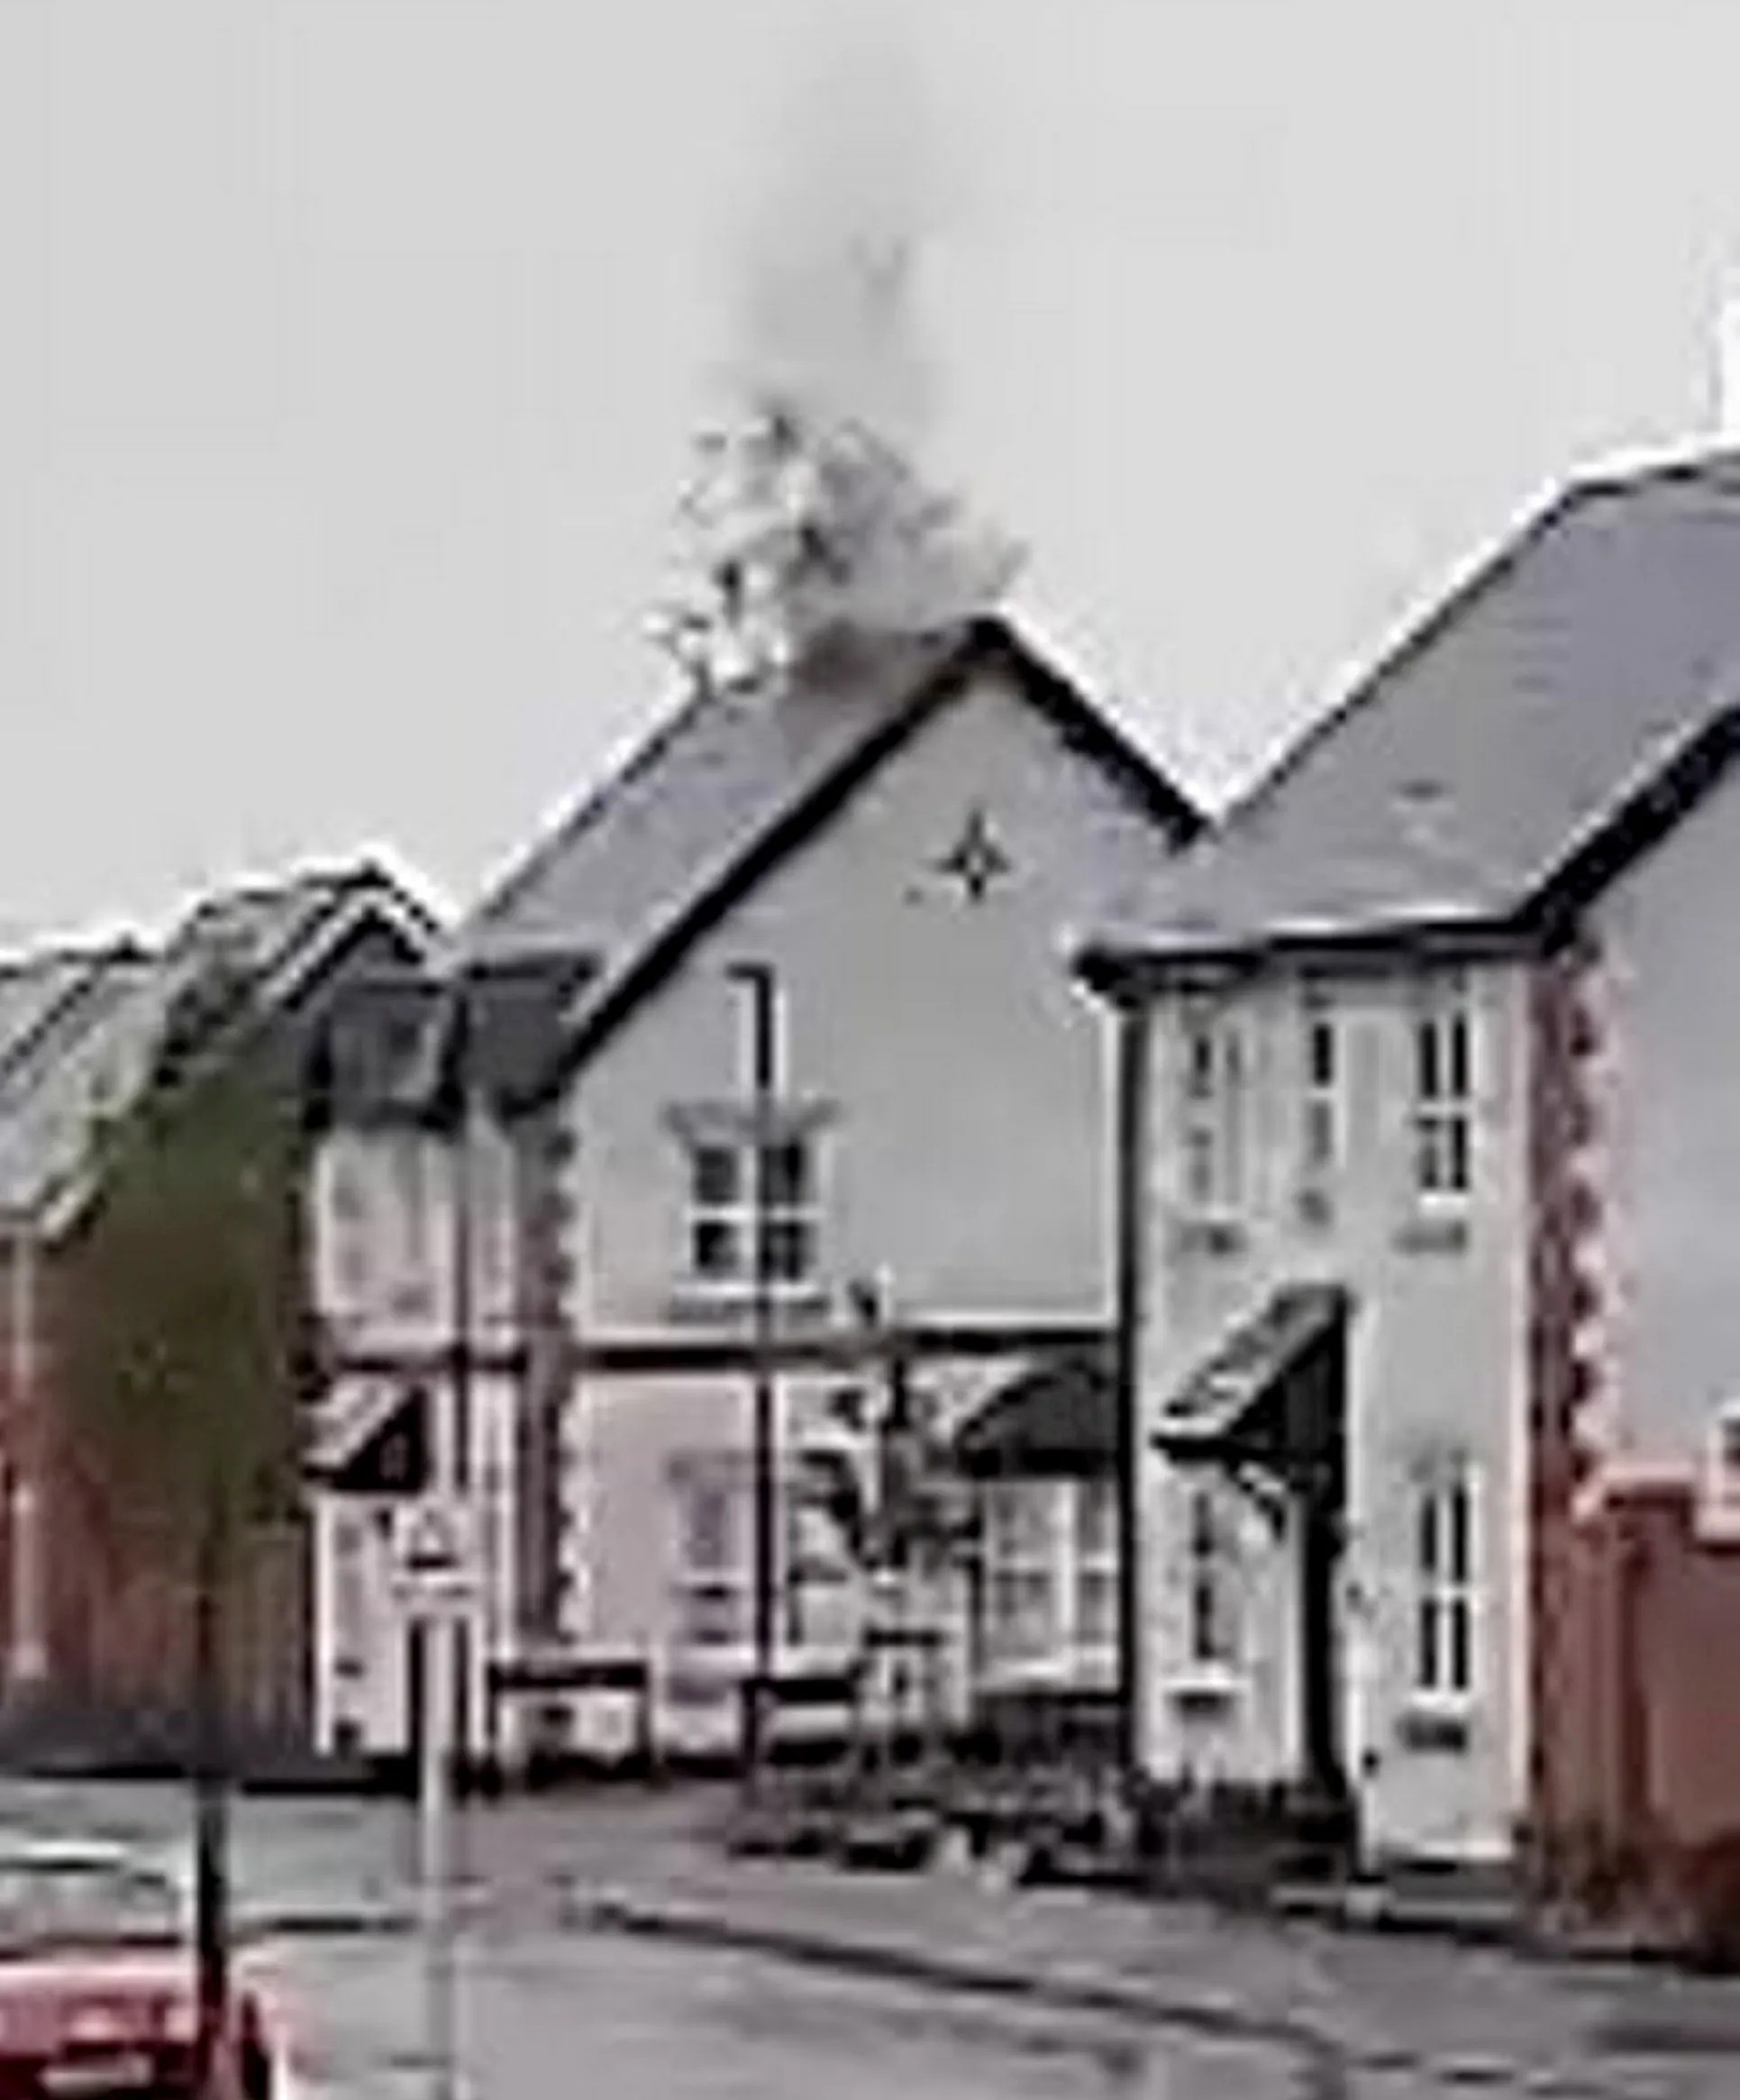 Eine Türklingelkamera hat gefilmt, wie es am Sonntag gegen den Schornstein prallte – das Dach zerstörte, den Heizkessel in die Luft jagte und die Elektrik lahmlegte